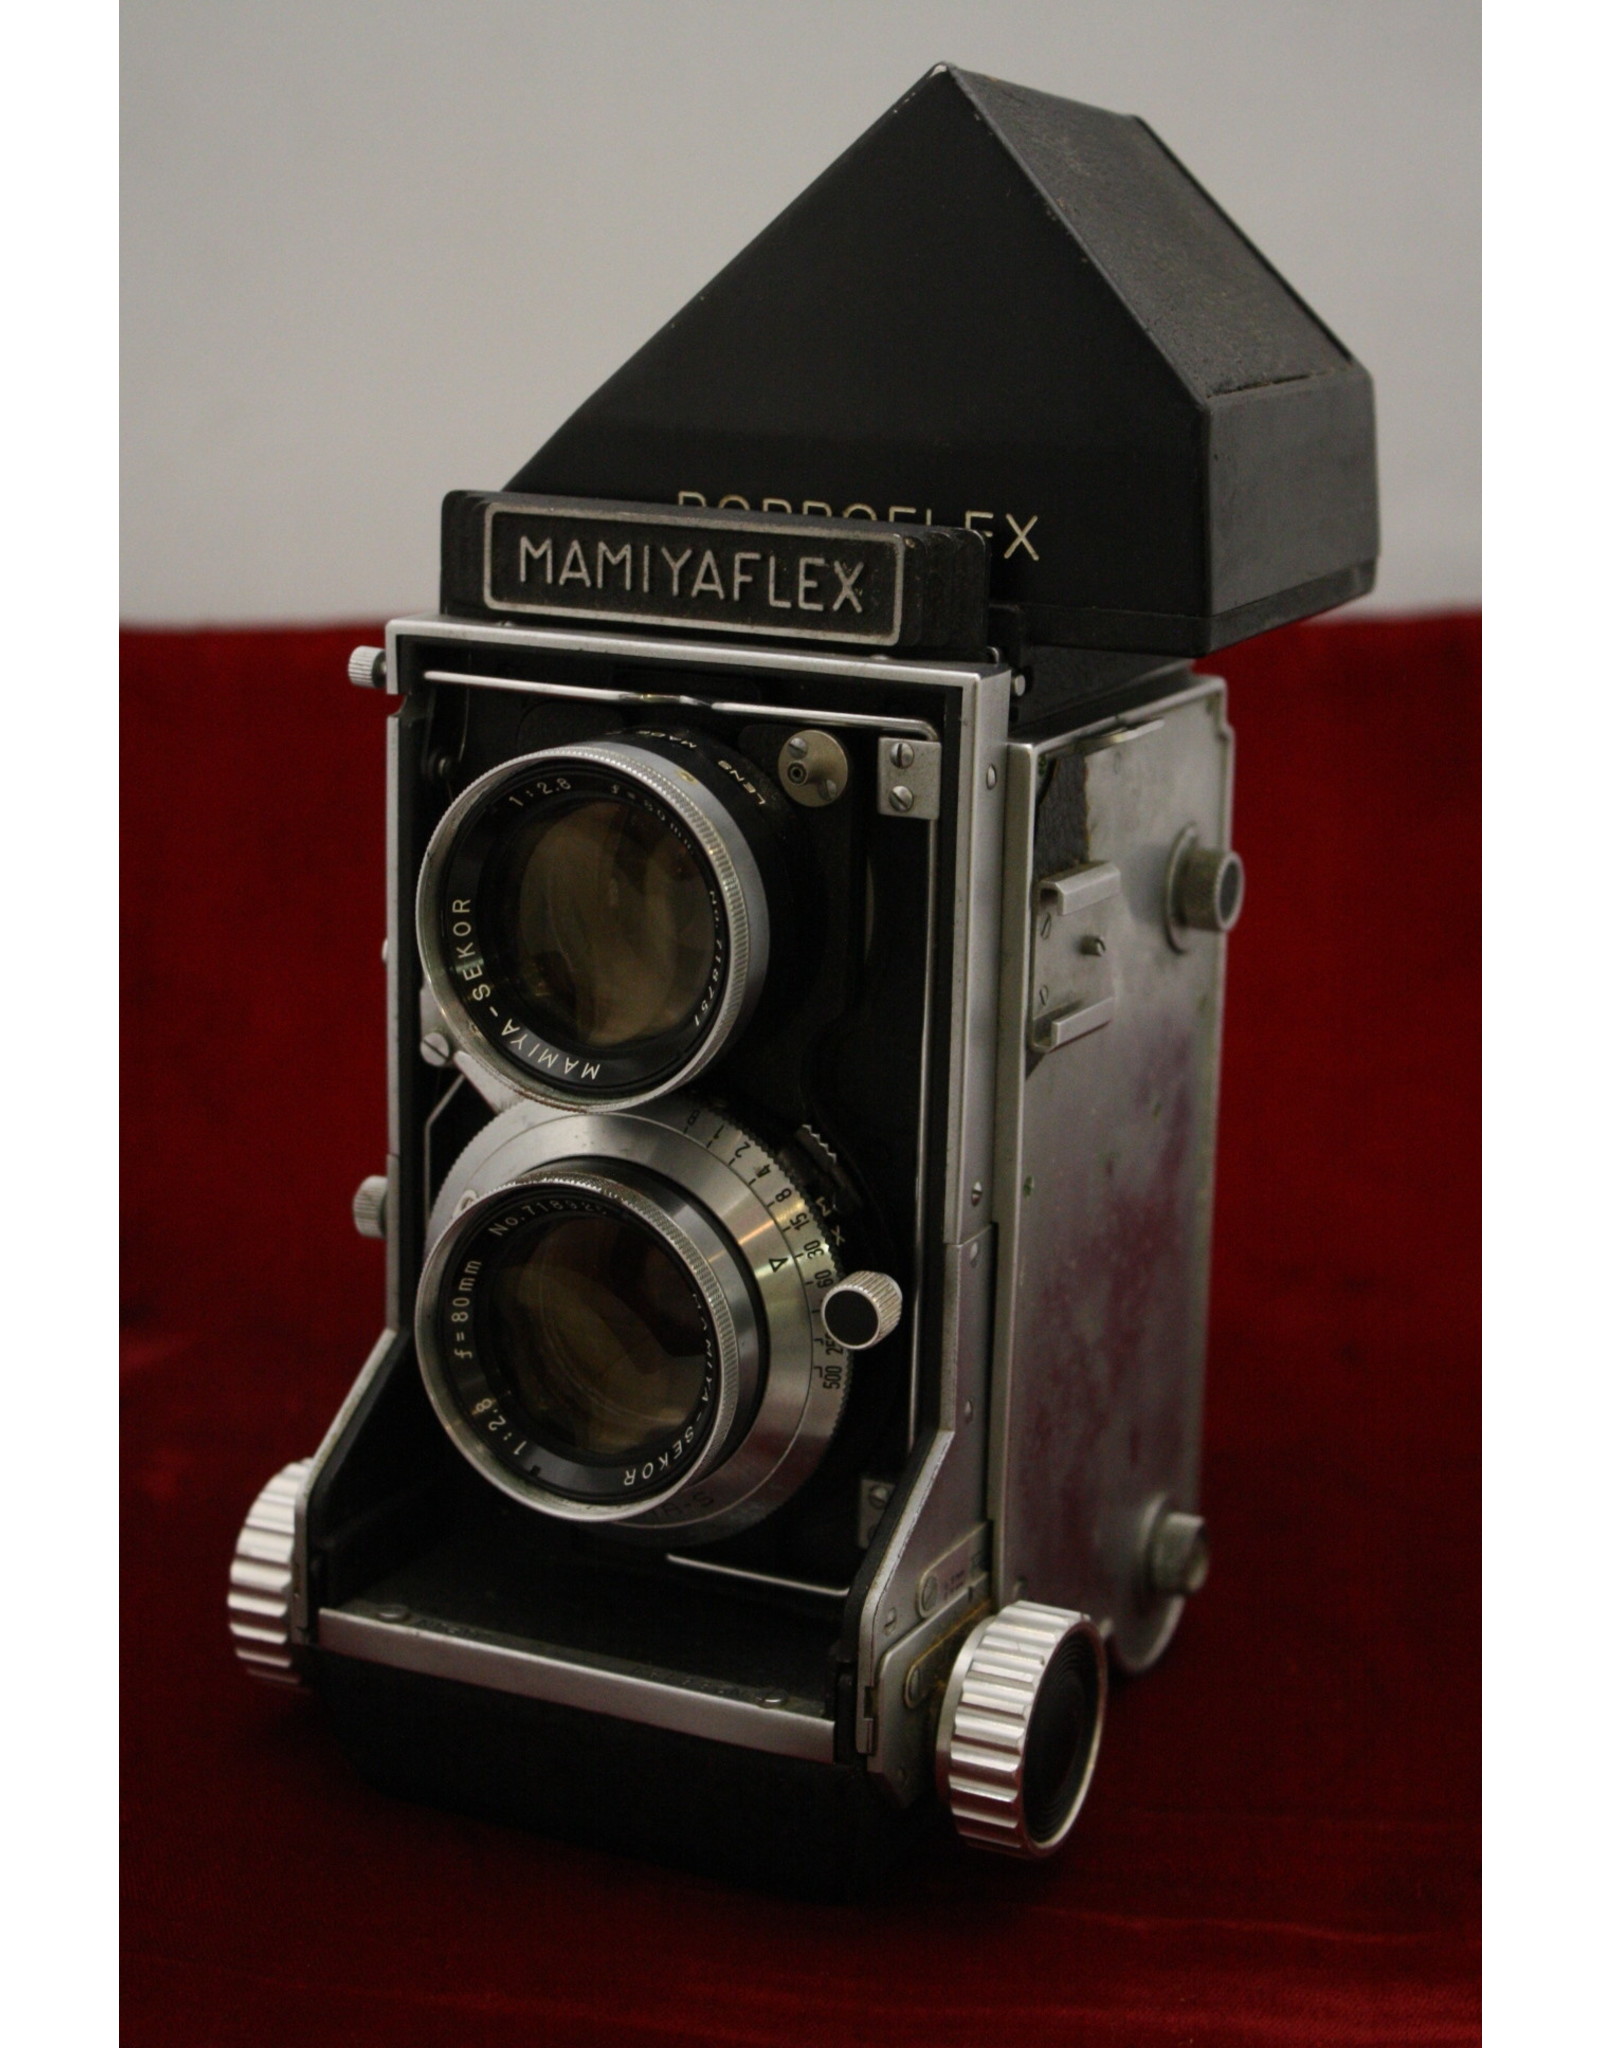 Mamiya Mamiya Mamiyaflex C2 6x6 TLR Camera Sekor 80mm f/2.8 From Japan